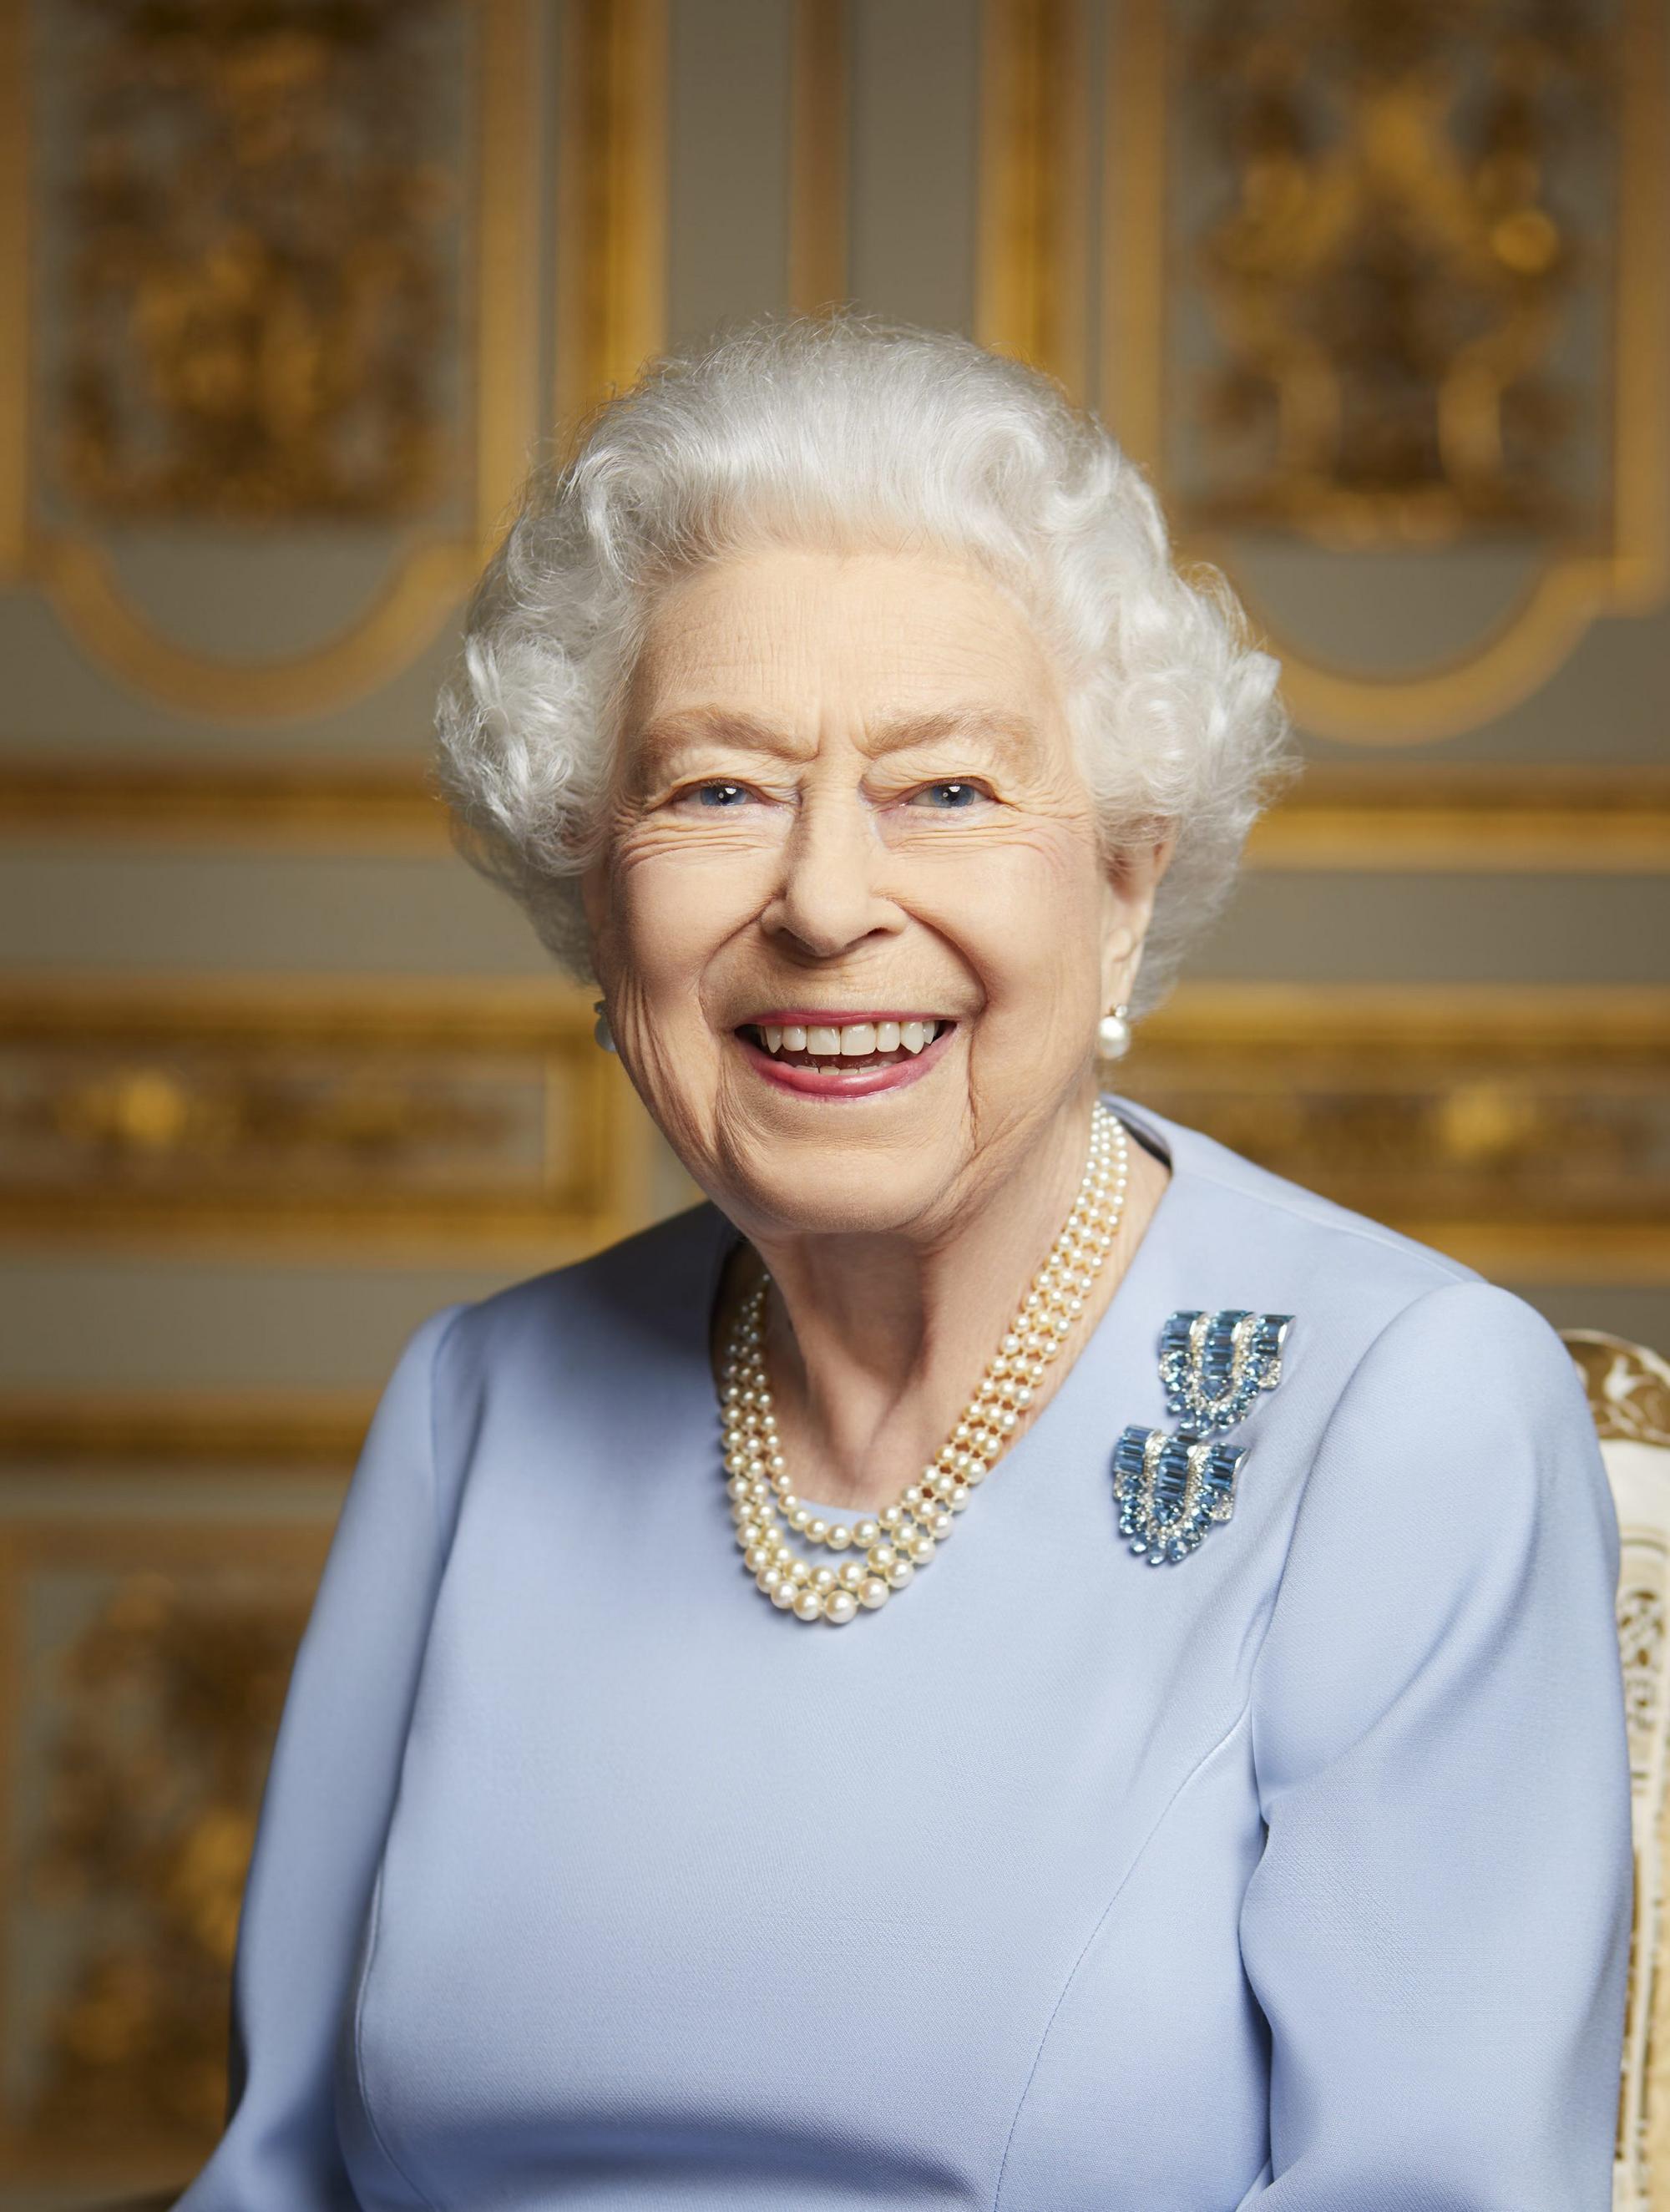 Buckinghamský palác zverejnil posledný portrét kráľovnej Alžbety II. 